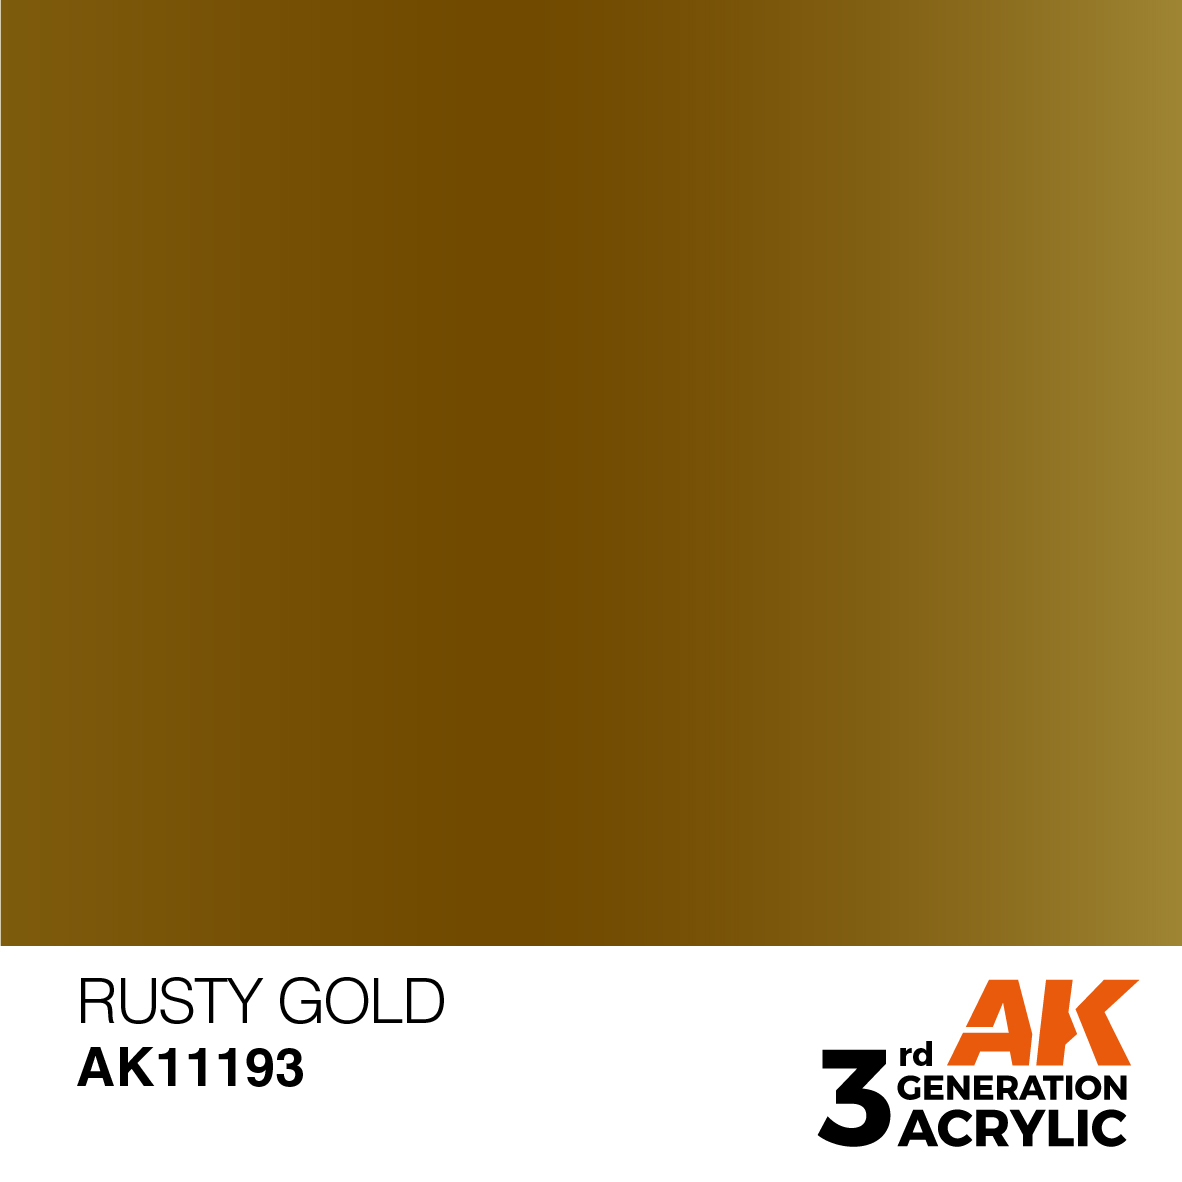 RUSTY GOLD – METALLIC